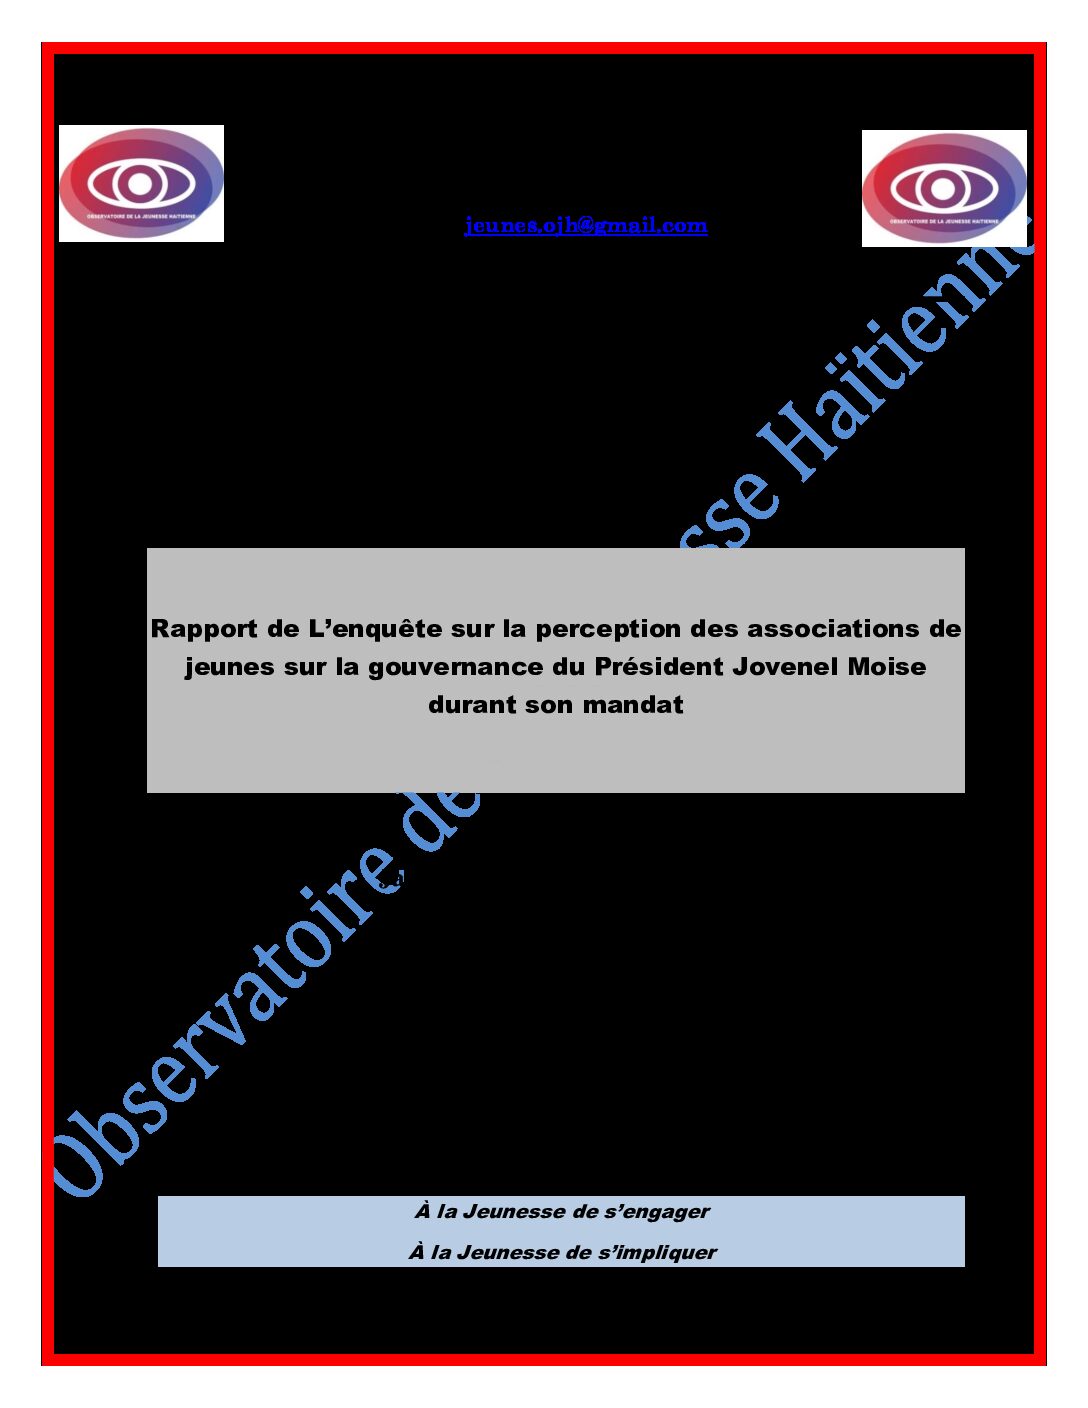 2021 Rapport Enquete sur la perception des organisations de jeunes sur la gouvernance de Jovenel Moise